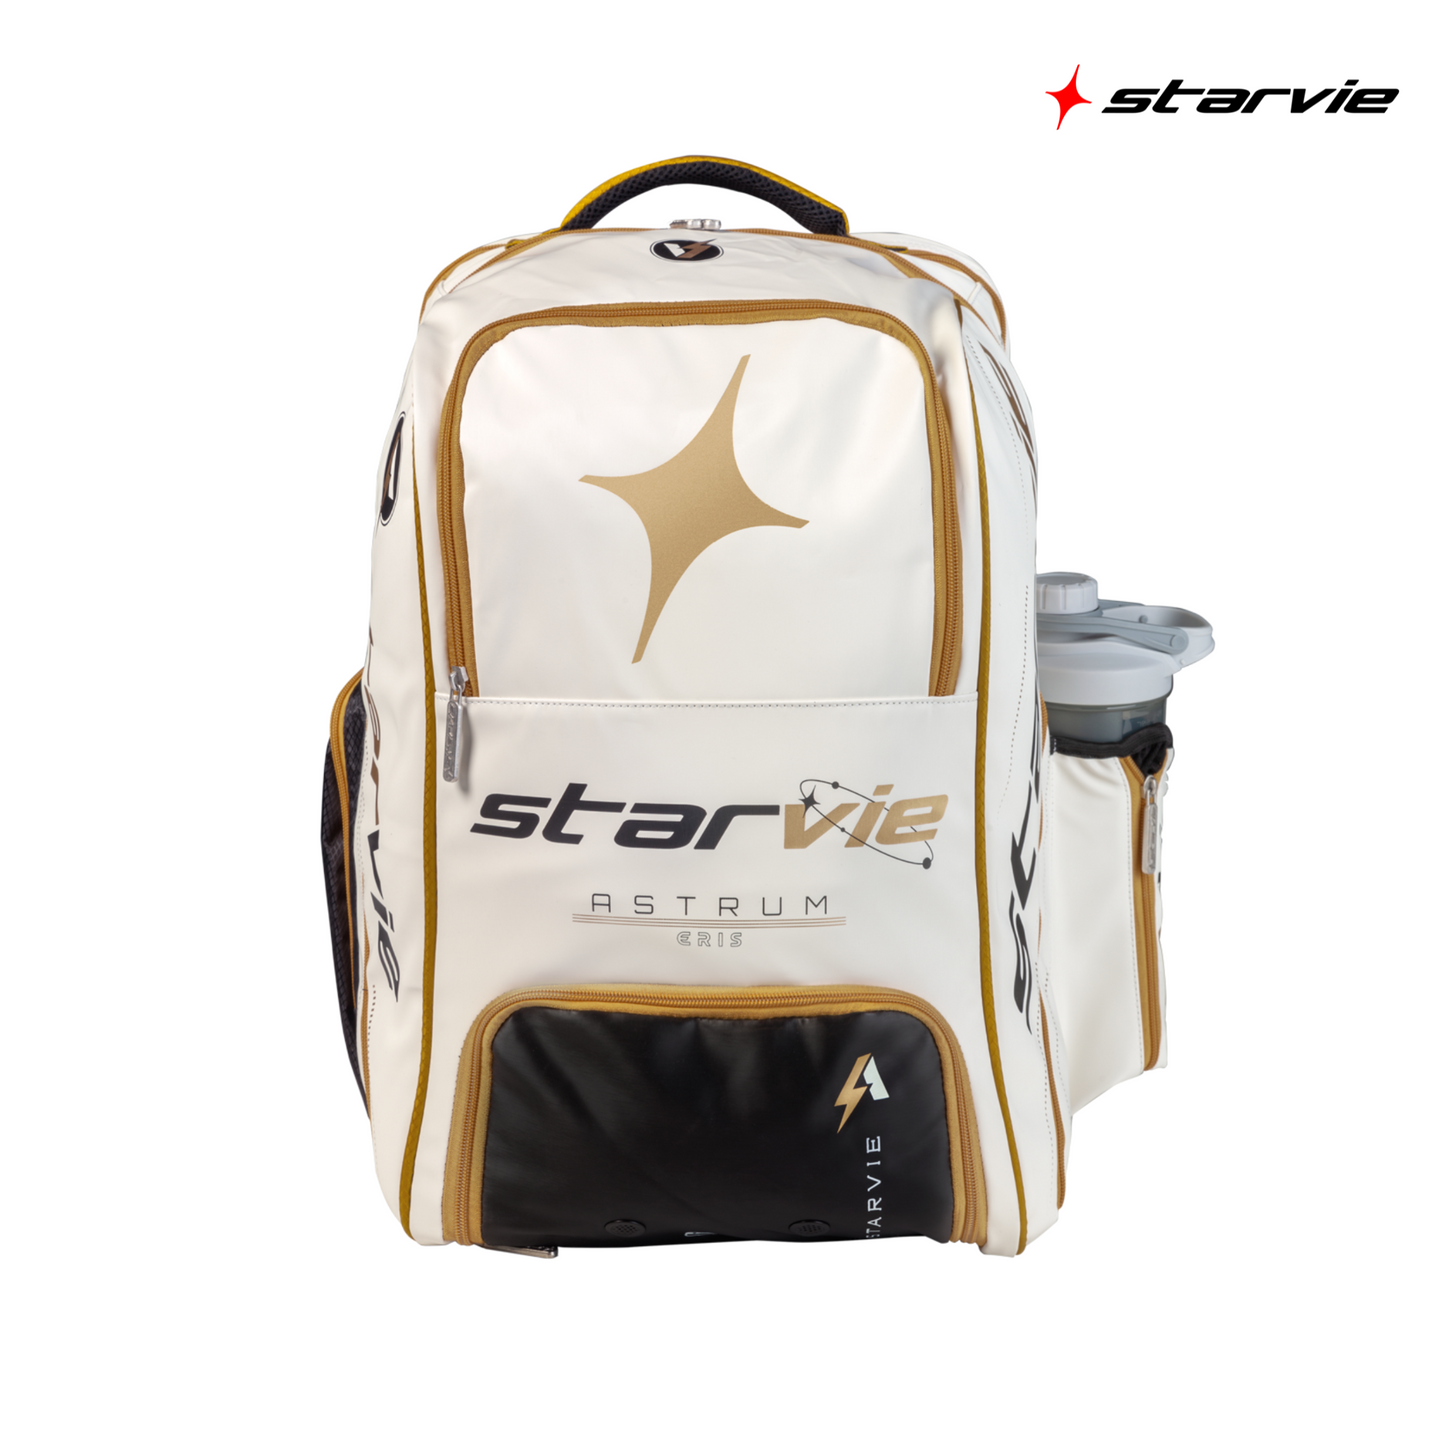 Starvie Astrum Eris Backpack | Padel Bags Bags Starvie   